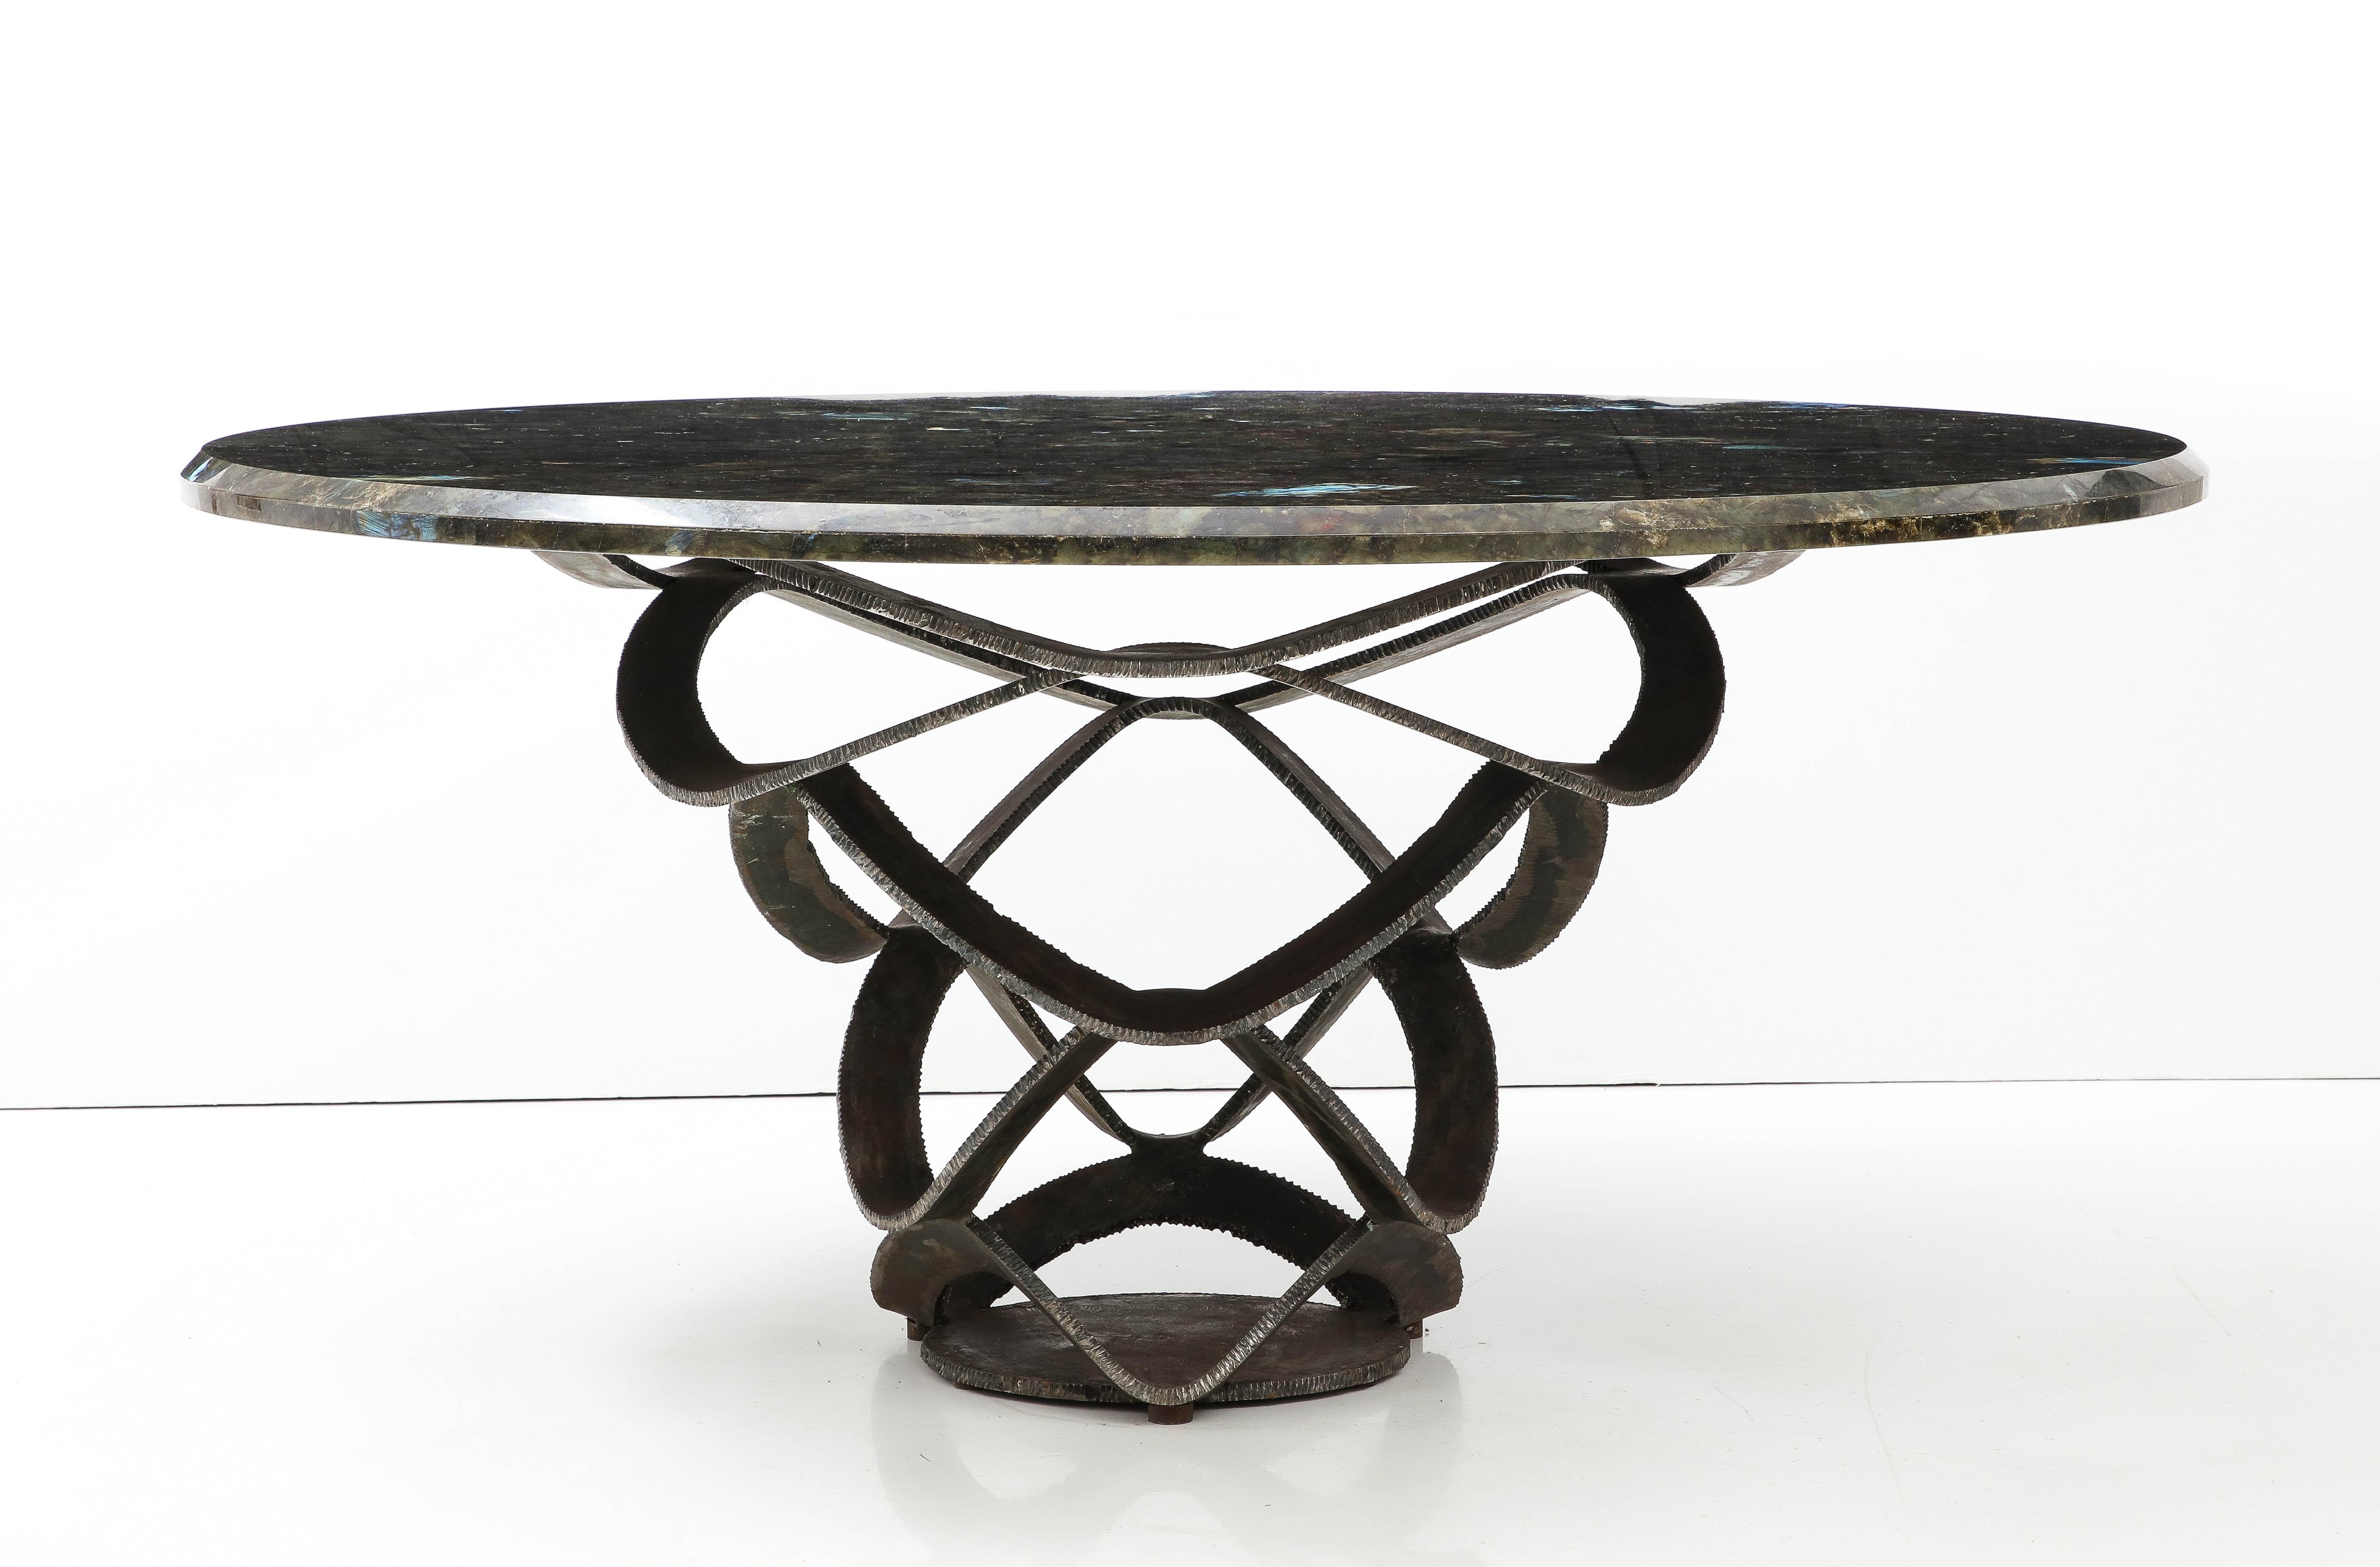 Fin du 20e siècle Spectaculaire table en acier forgé et pierre de labradorite des années 1970 de The Moderns